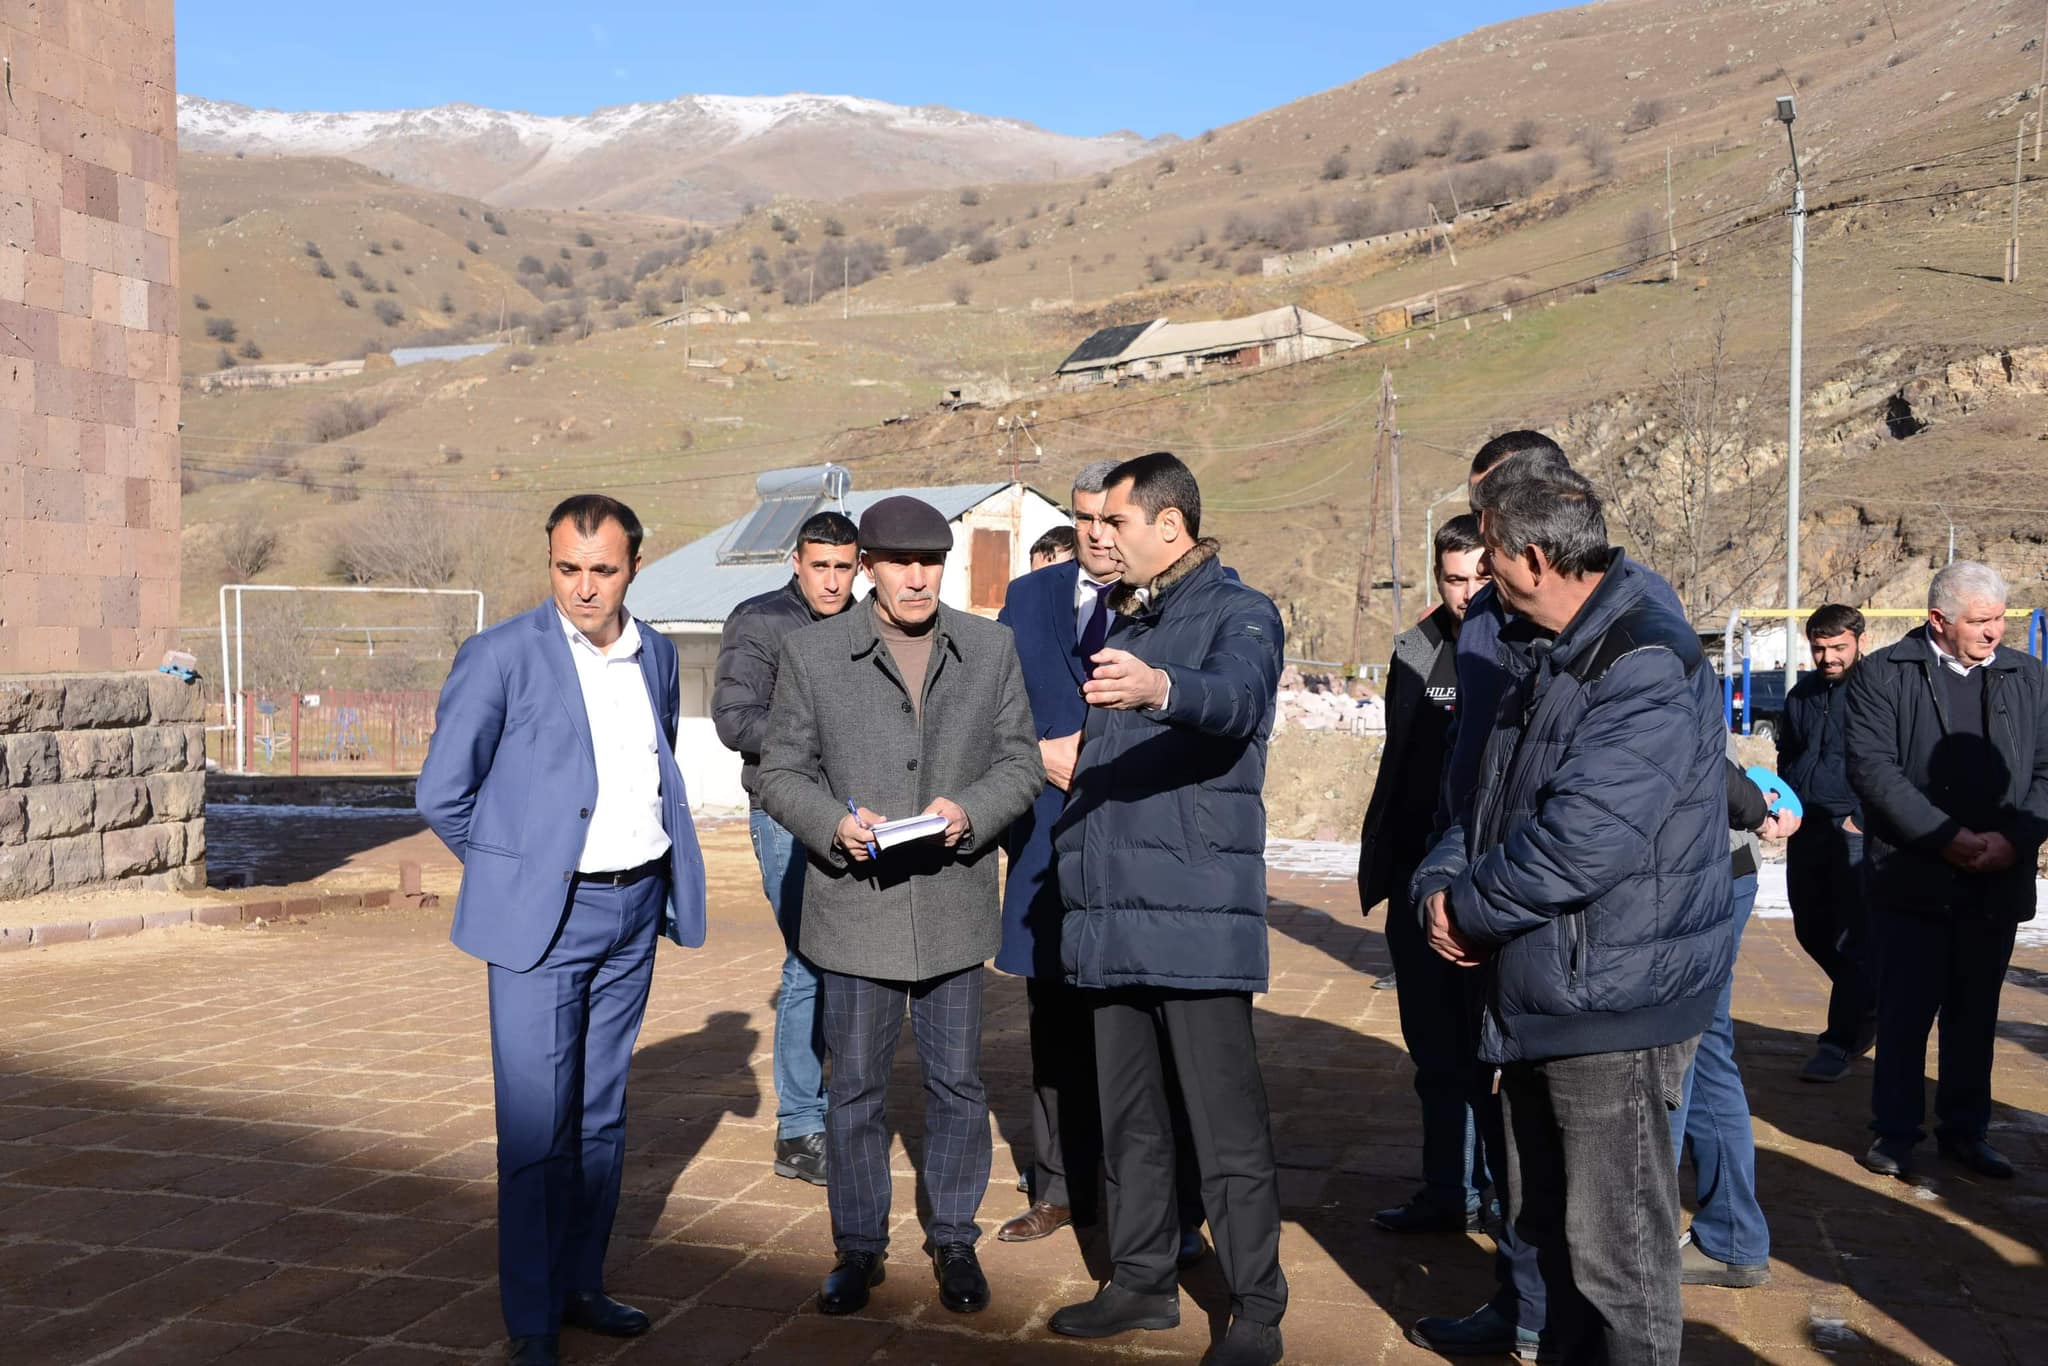 Գեղարքունիքի մարզպետն այցելել է Թթուջուր և Մարտունի բնակավայրեր՝ ընթացքի մեջ գտնվող սուբվենցիոն ծրագրերի մշտադիտարկում իրականացնելու նպատակով